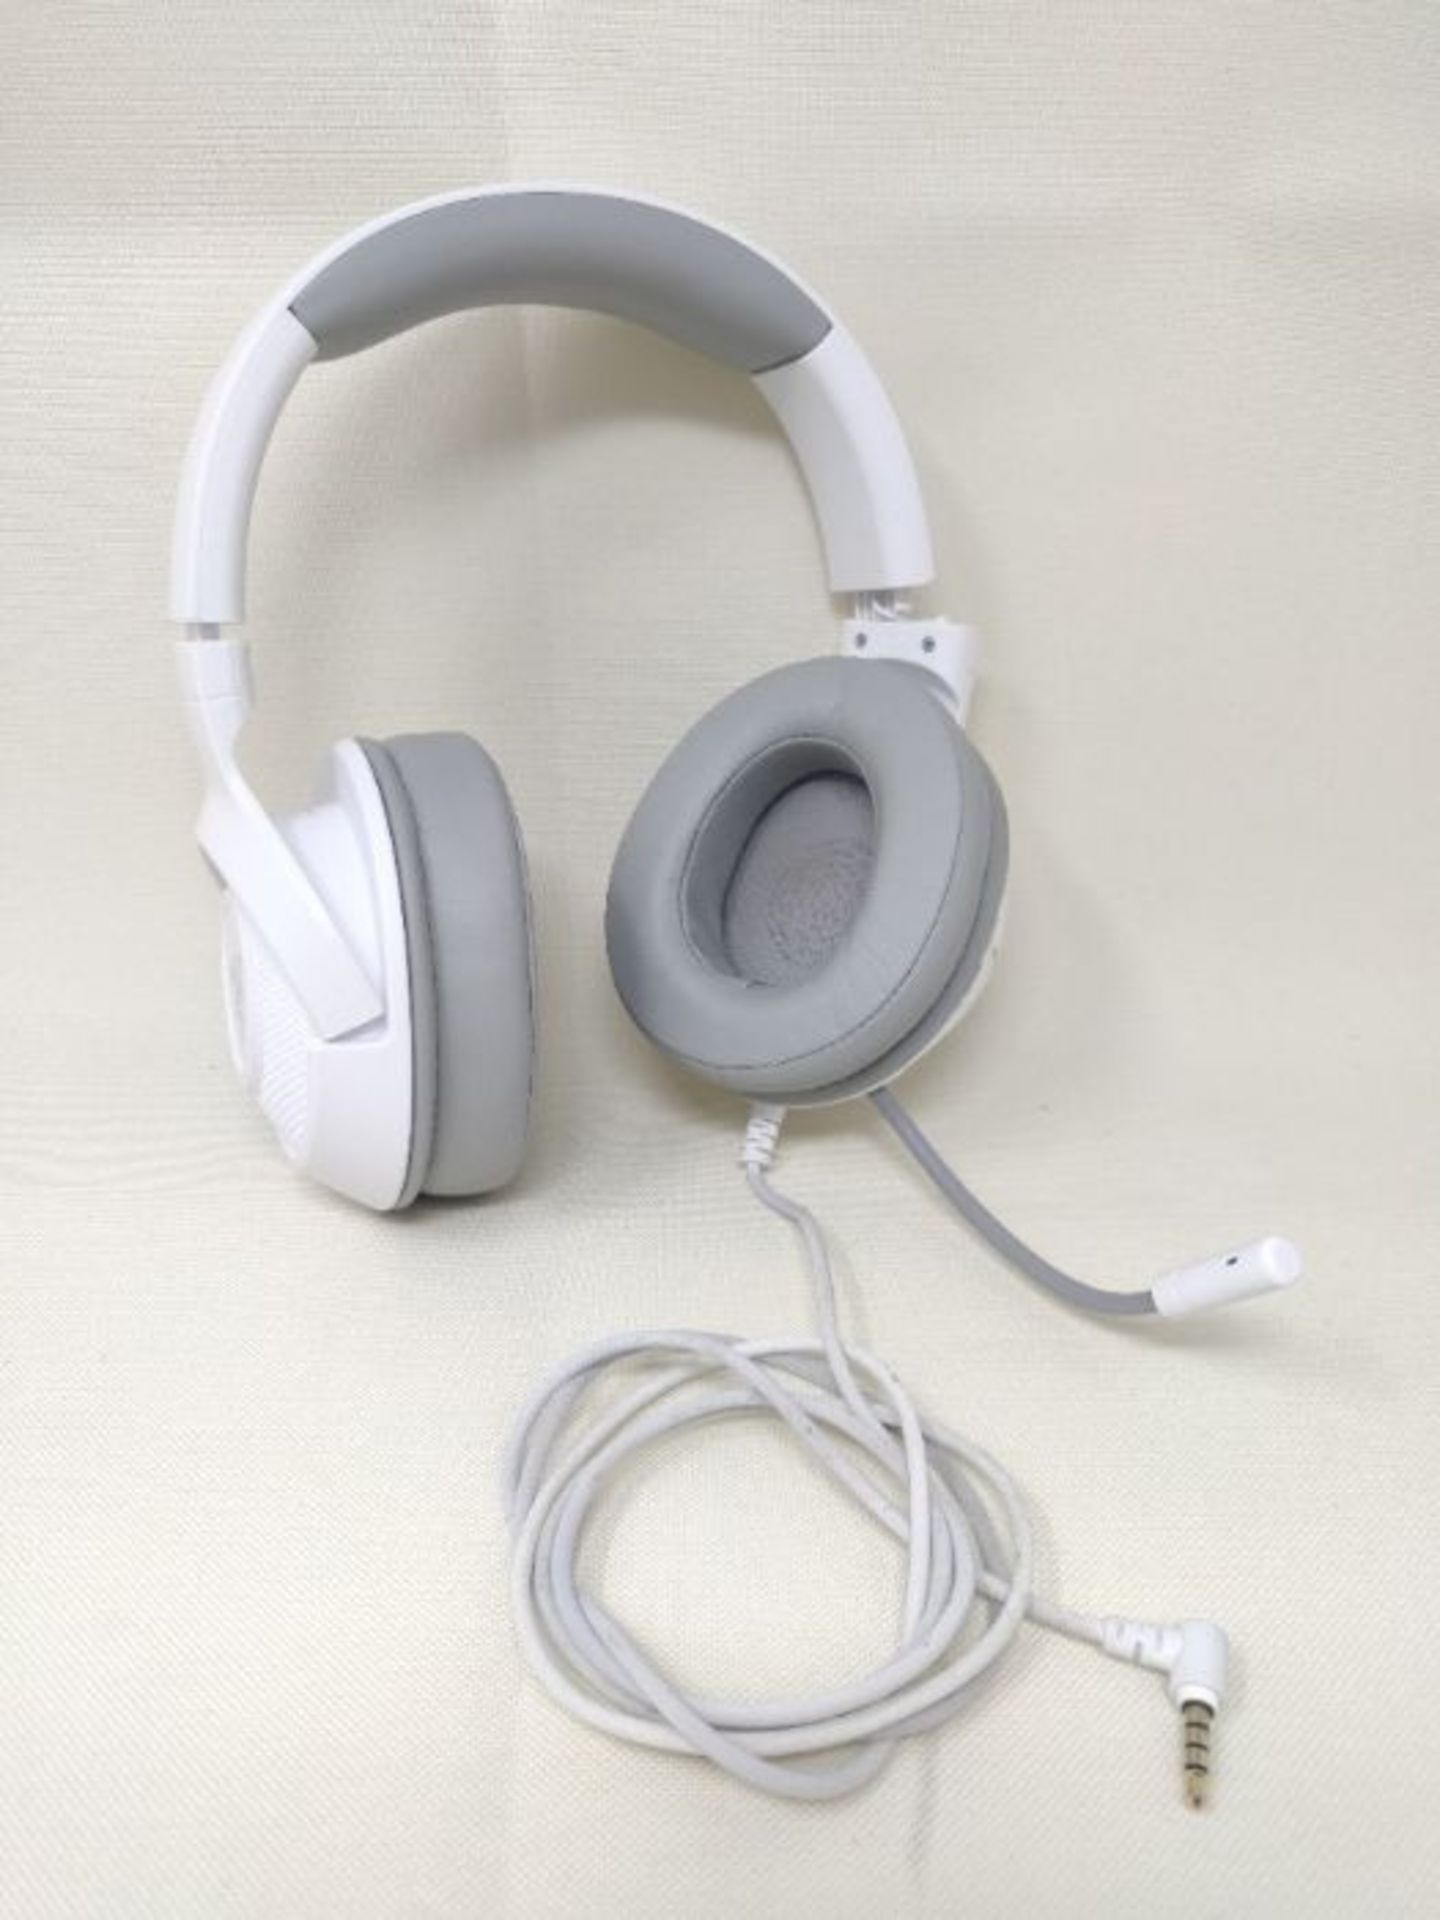 [CRACKED] Razer Kraken X Mercury - Gaming Headset (Ultra-Light Gaming Headphones for P - Image 2 of 2